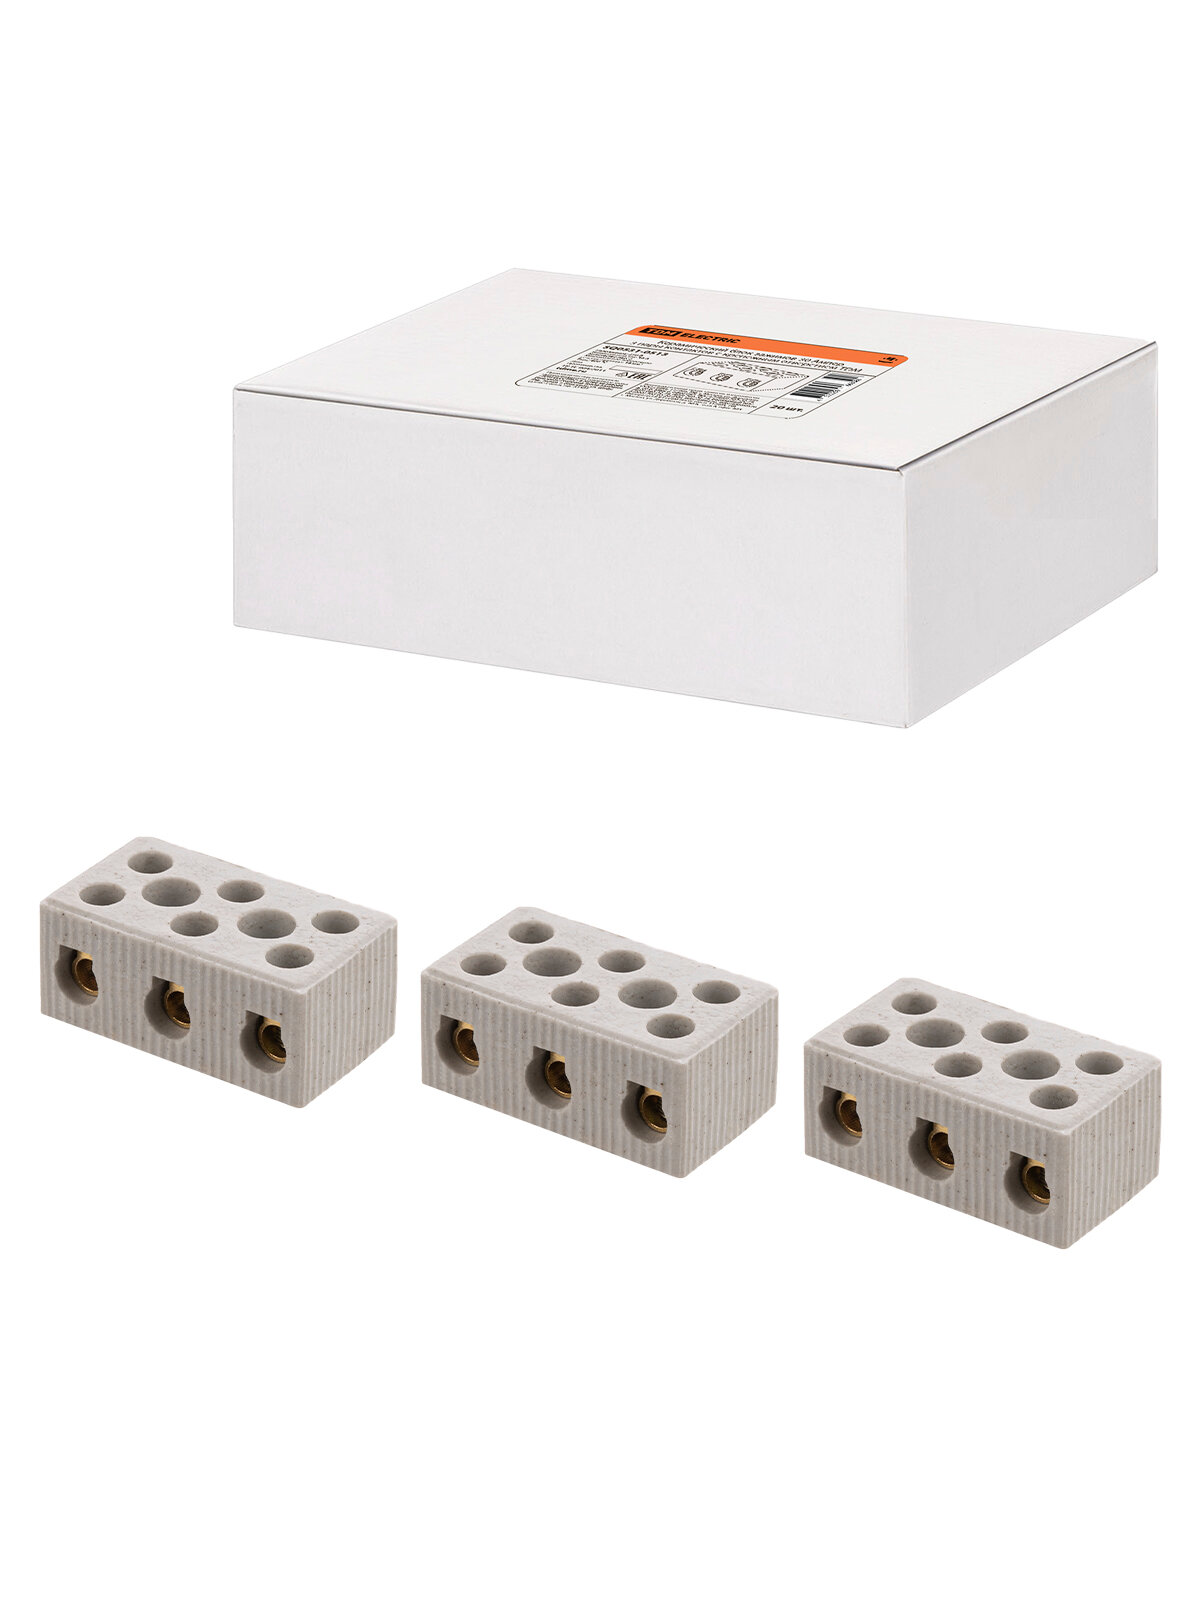 Керамический блок зажимов 30 Ампер 3 пары контактов с крепежным отверстием TDM SQ0531-0513, цена за 1 штуку